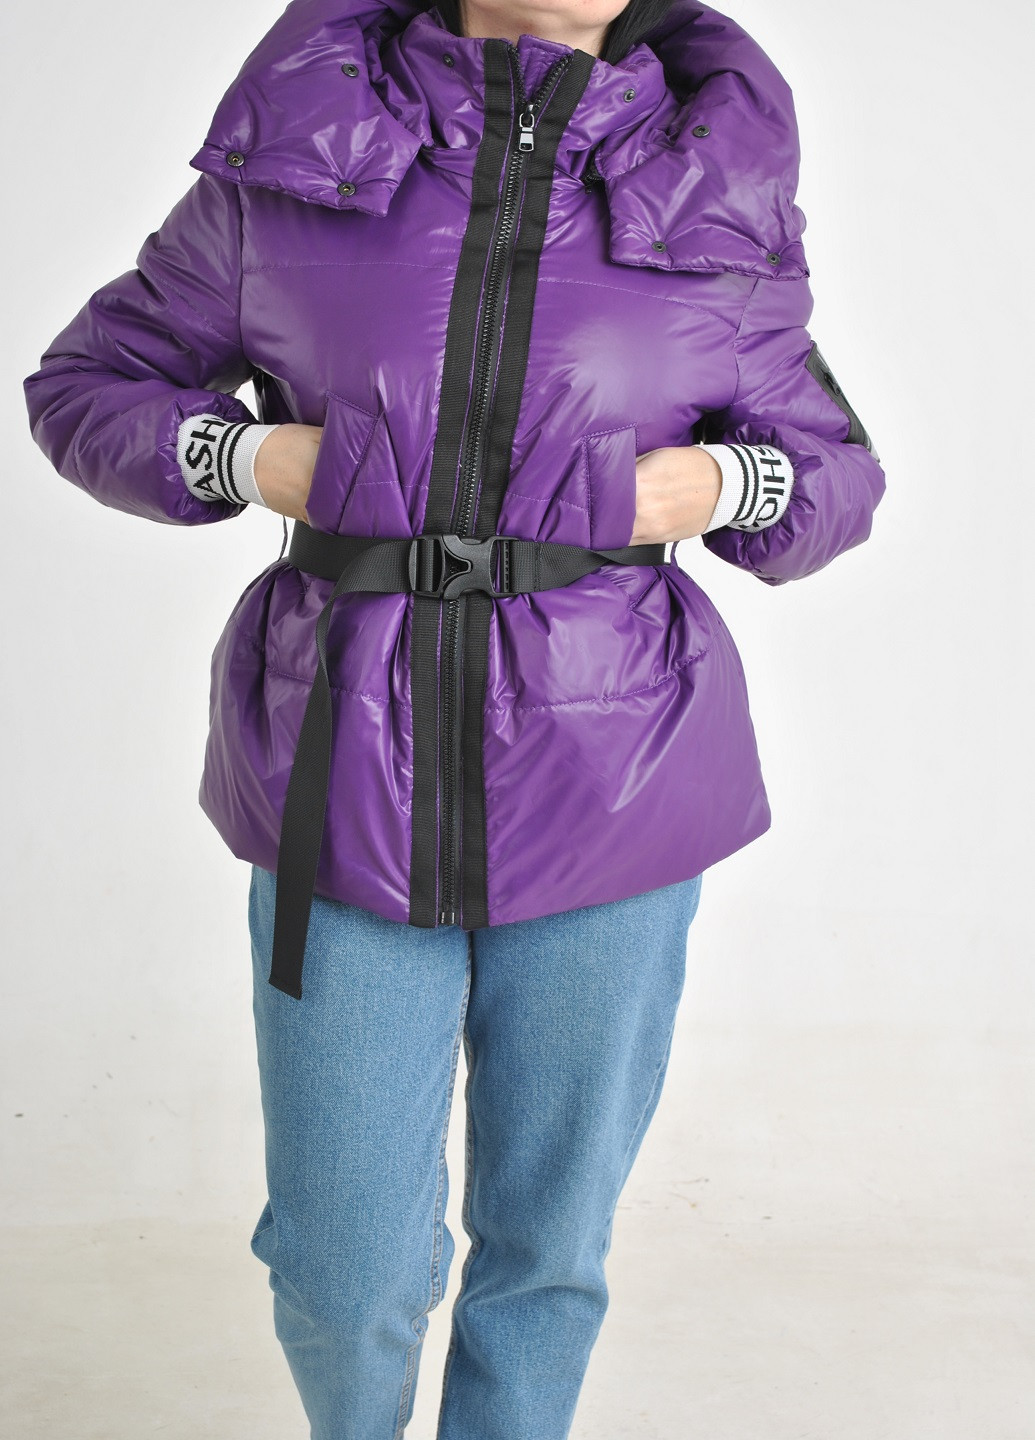 Фиолетовая демисезонная куртка Fashion Club